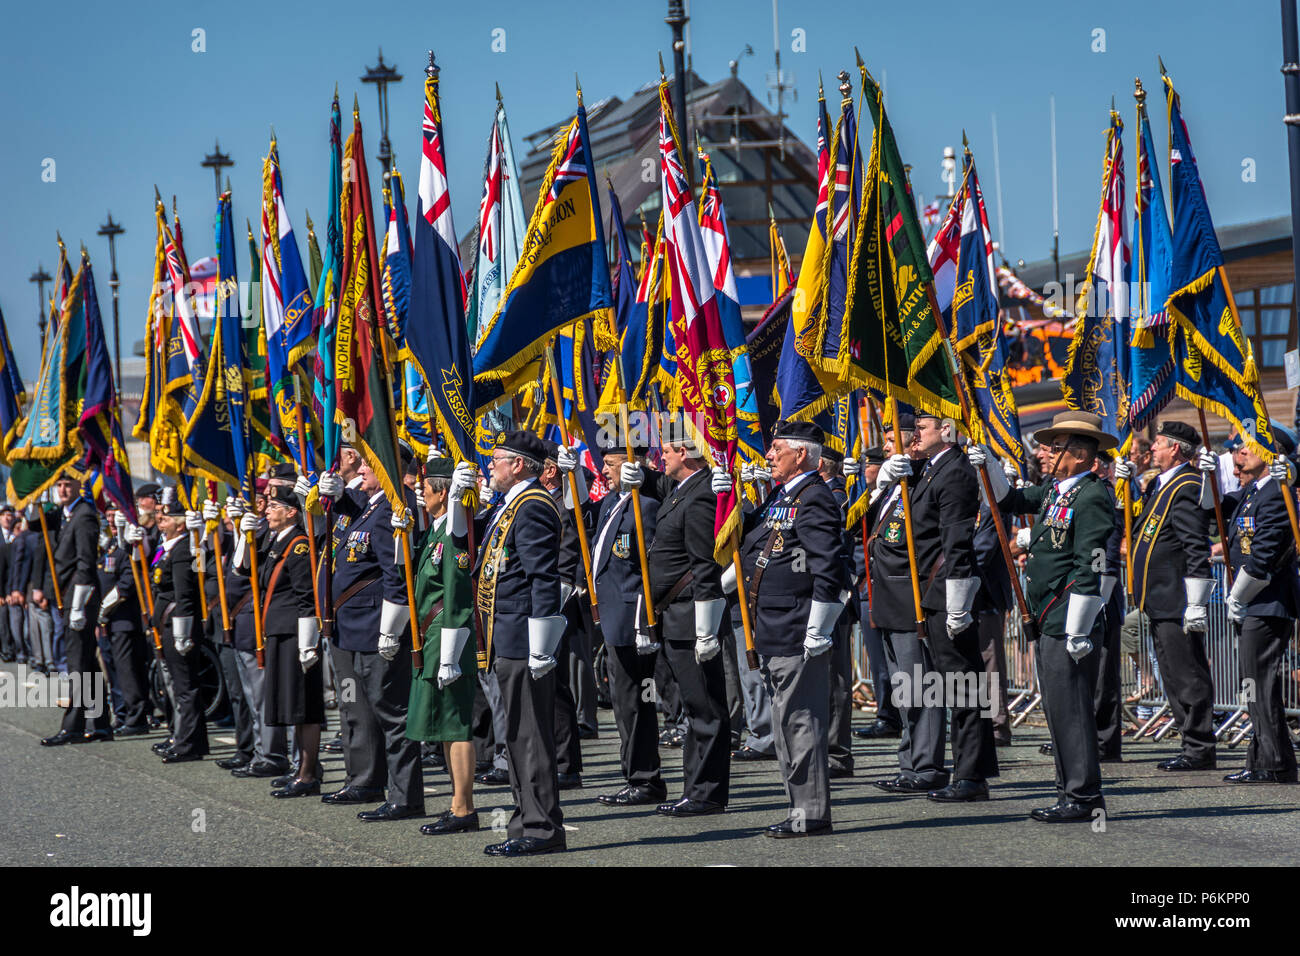 Streitkräfte Tag 2018 in Llandudno. UK Holding Veteranen Fahnen auf der Parade. 2018 an einem sehr heißen Tag. Stockfoto